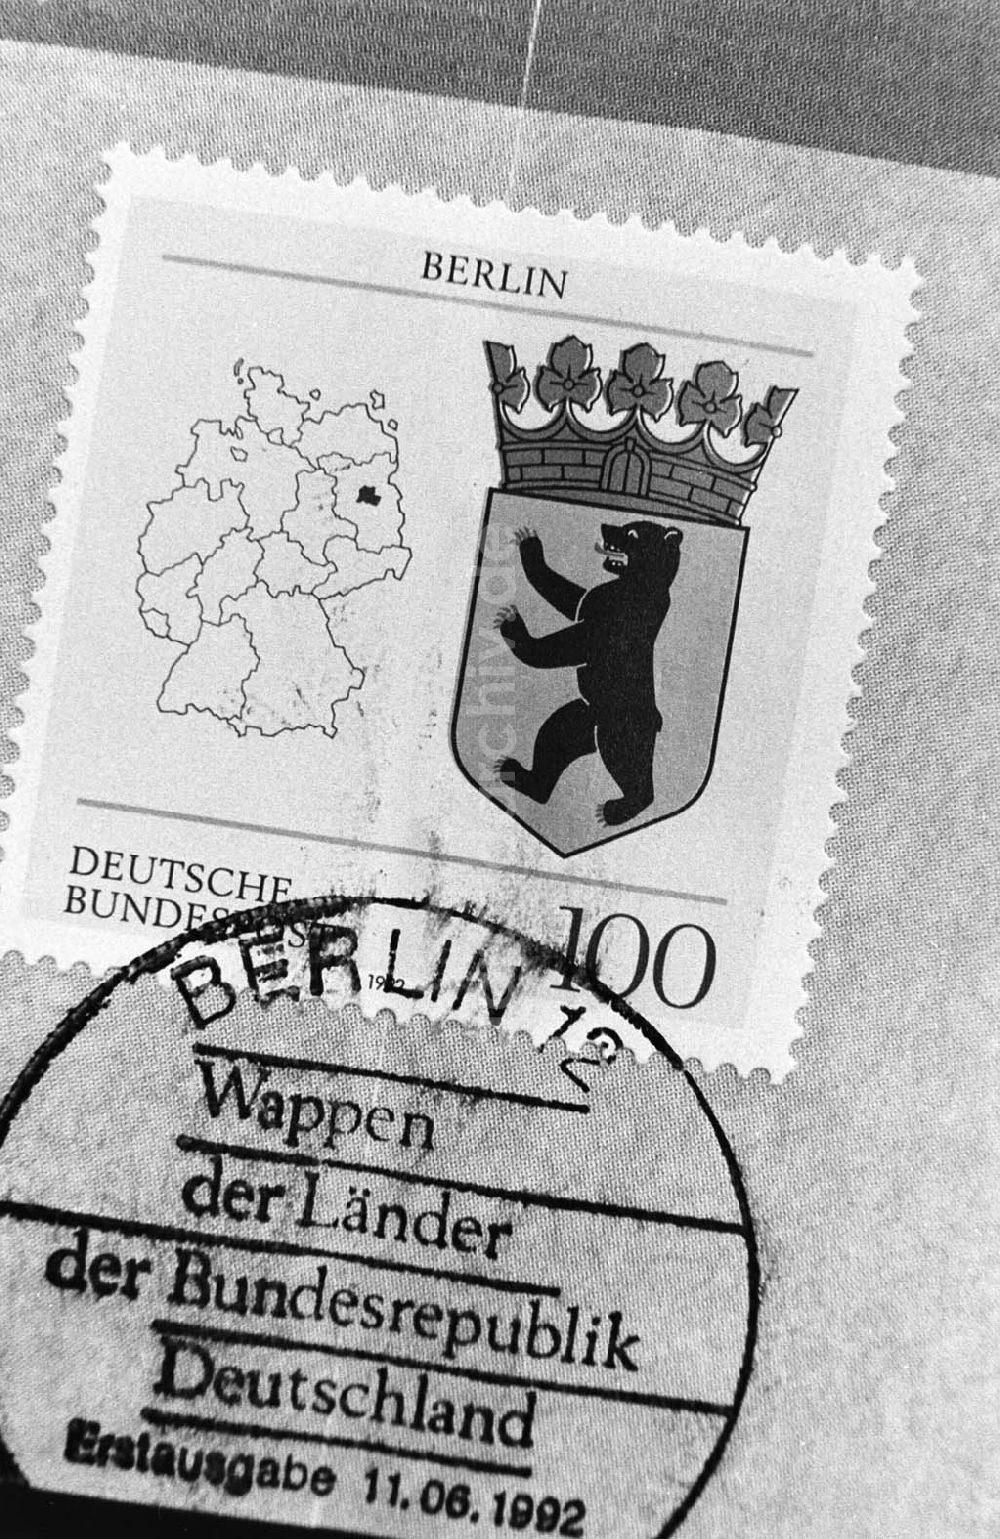 DDR-Fotoarchiv: Berlin - 11.06.92 Briefmarke Wappen von Berlin